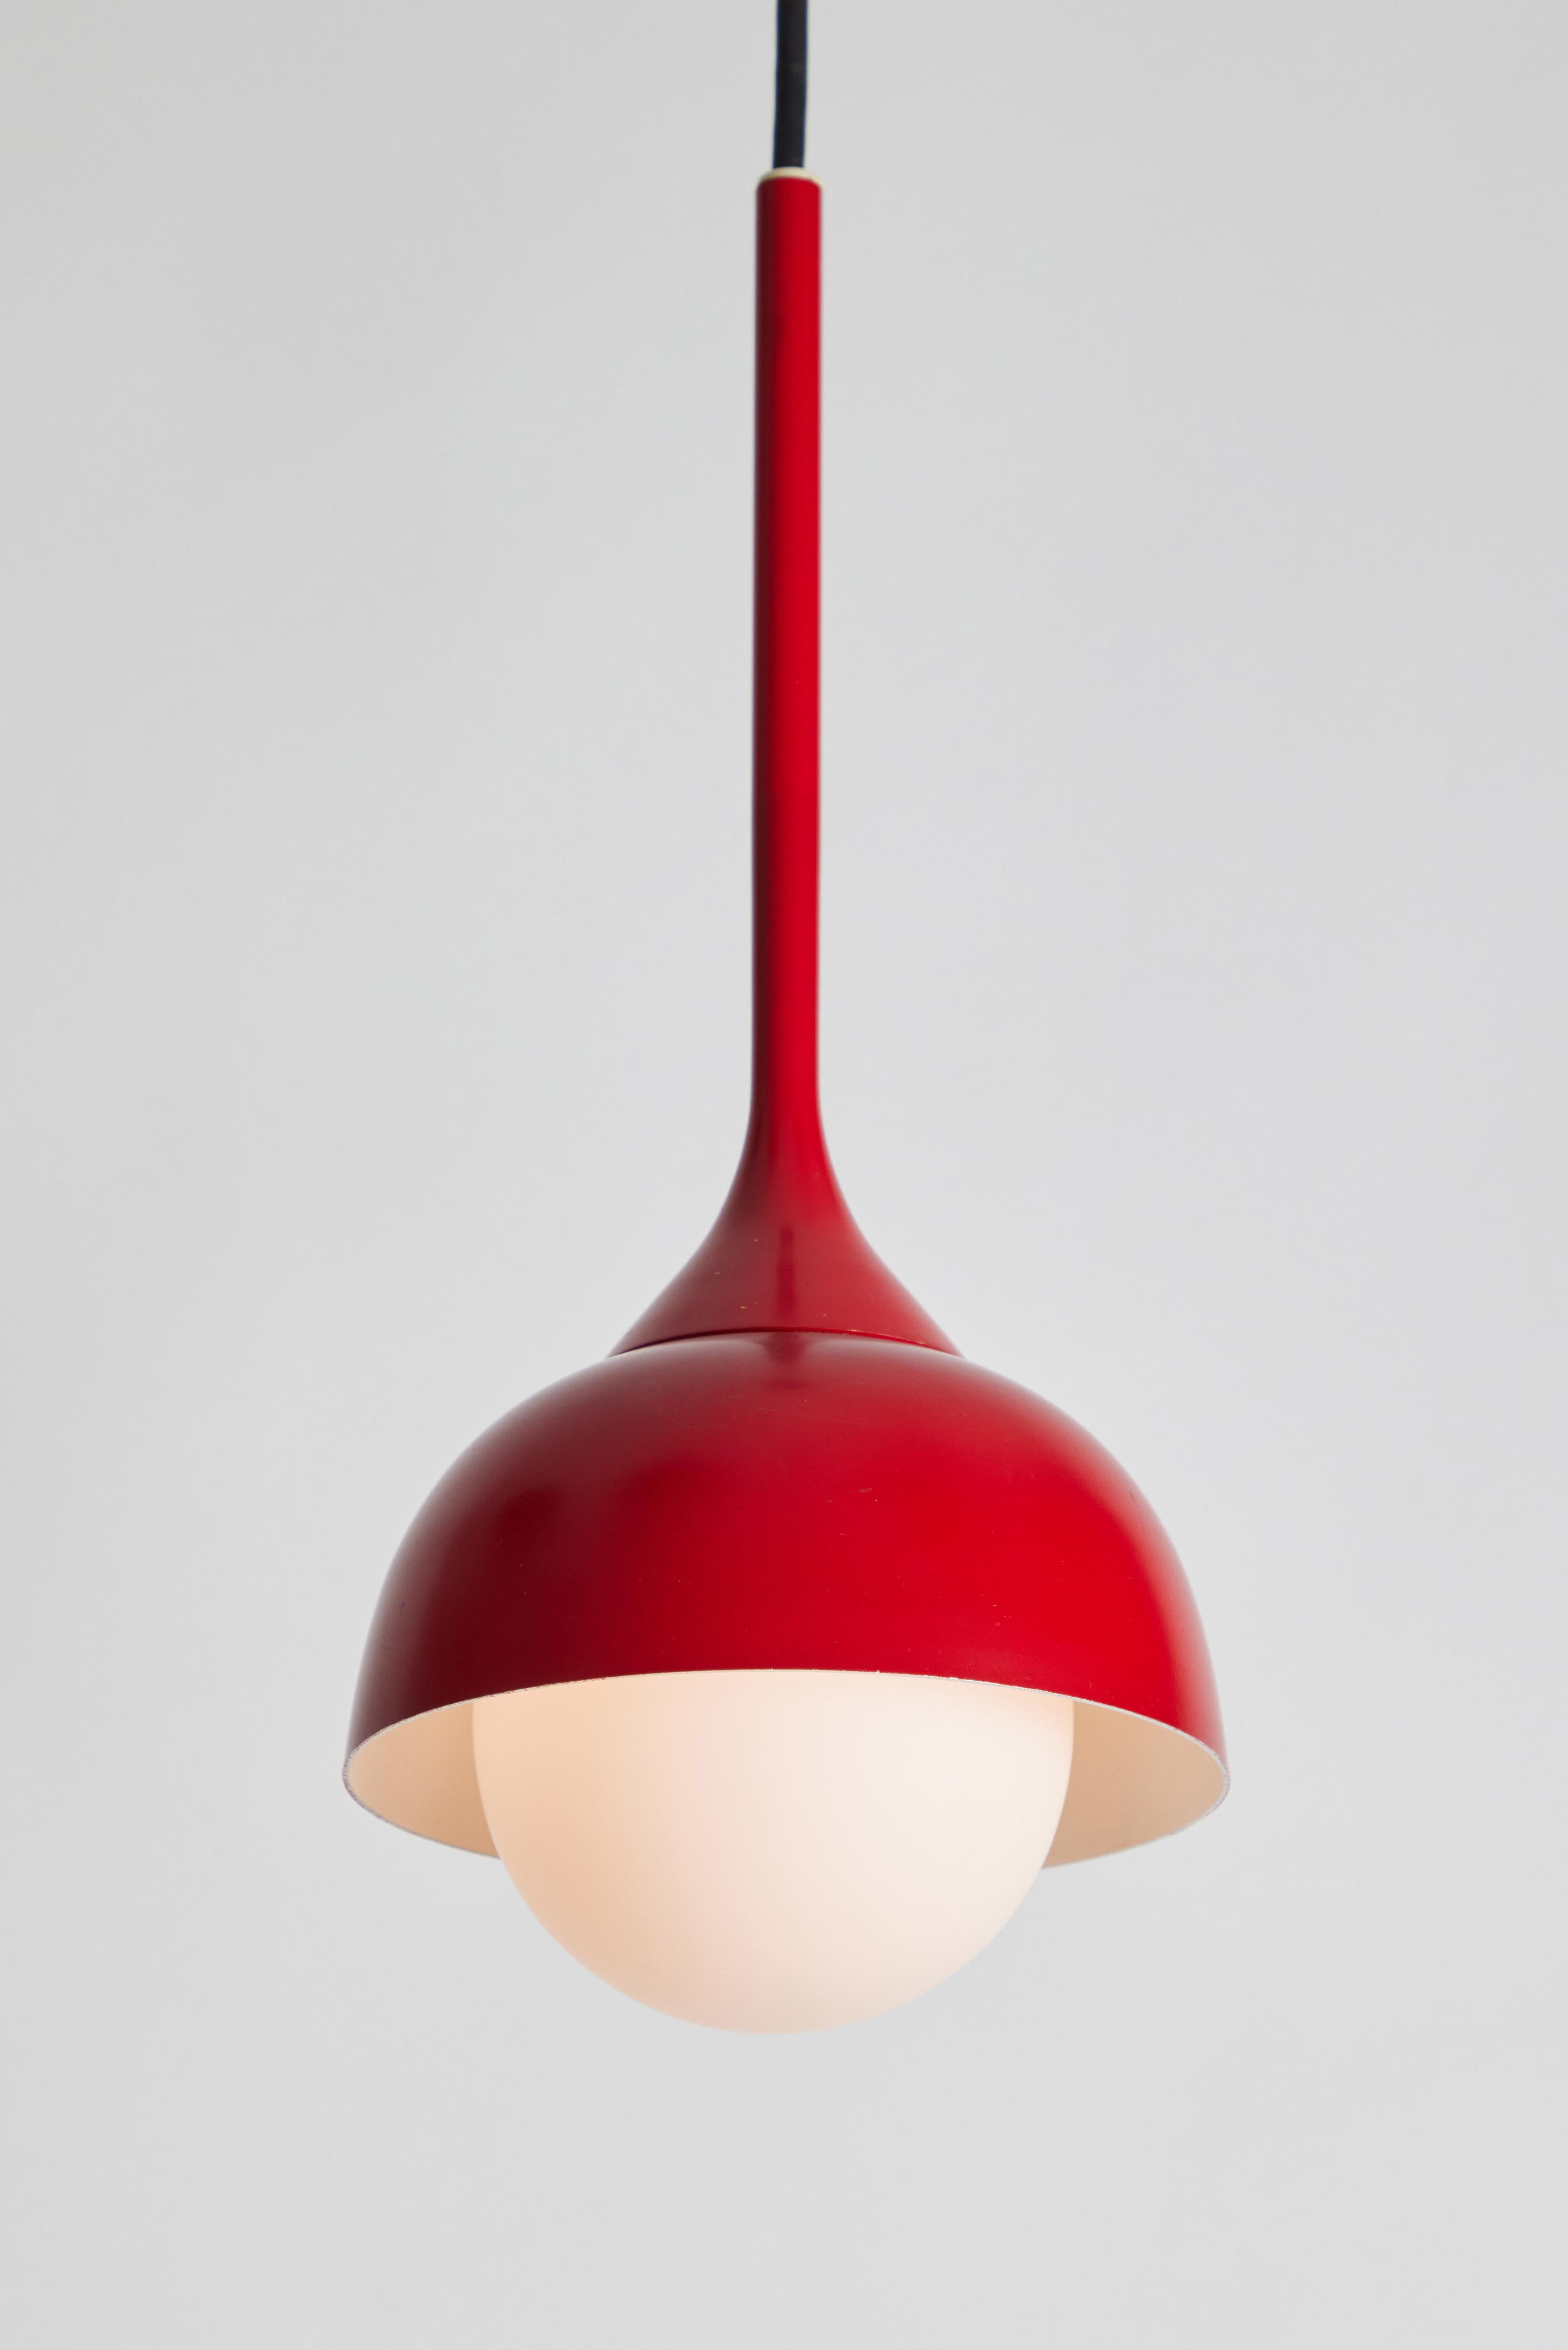 anhänger aus Glas und rot lackiertem Metall aus den 1960er Jahren, zugeschrieben von Stilnovo. Ein typisch italienisches Design der 1960er Jahre aus Opalglas und rot lackiertem Metall mit einem maßgeschneiderten Deckenbaldachin für die Montage über